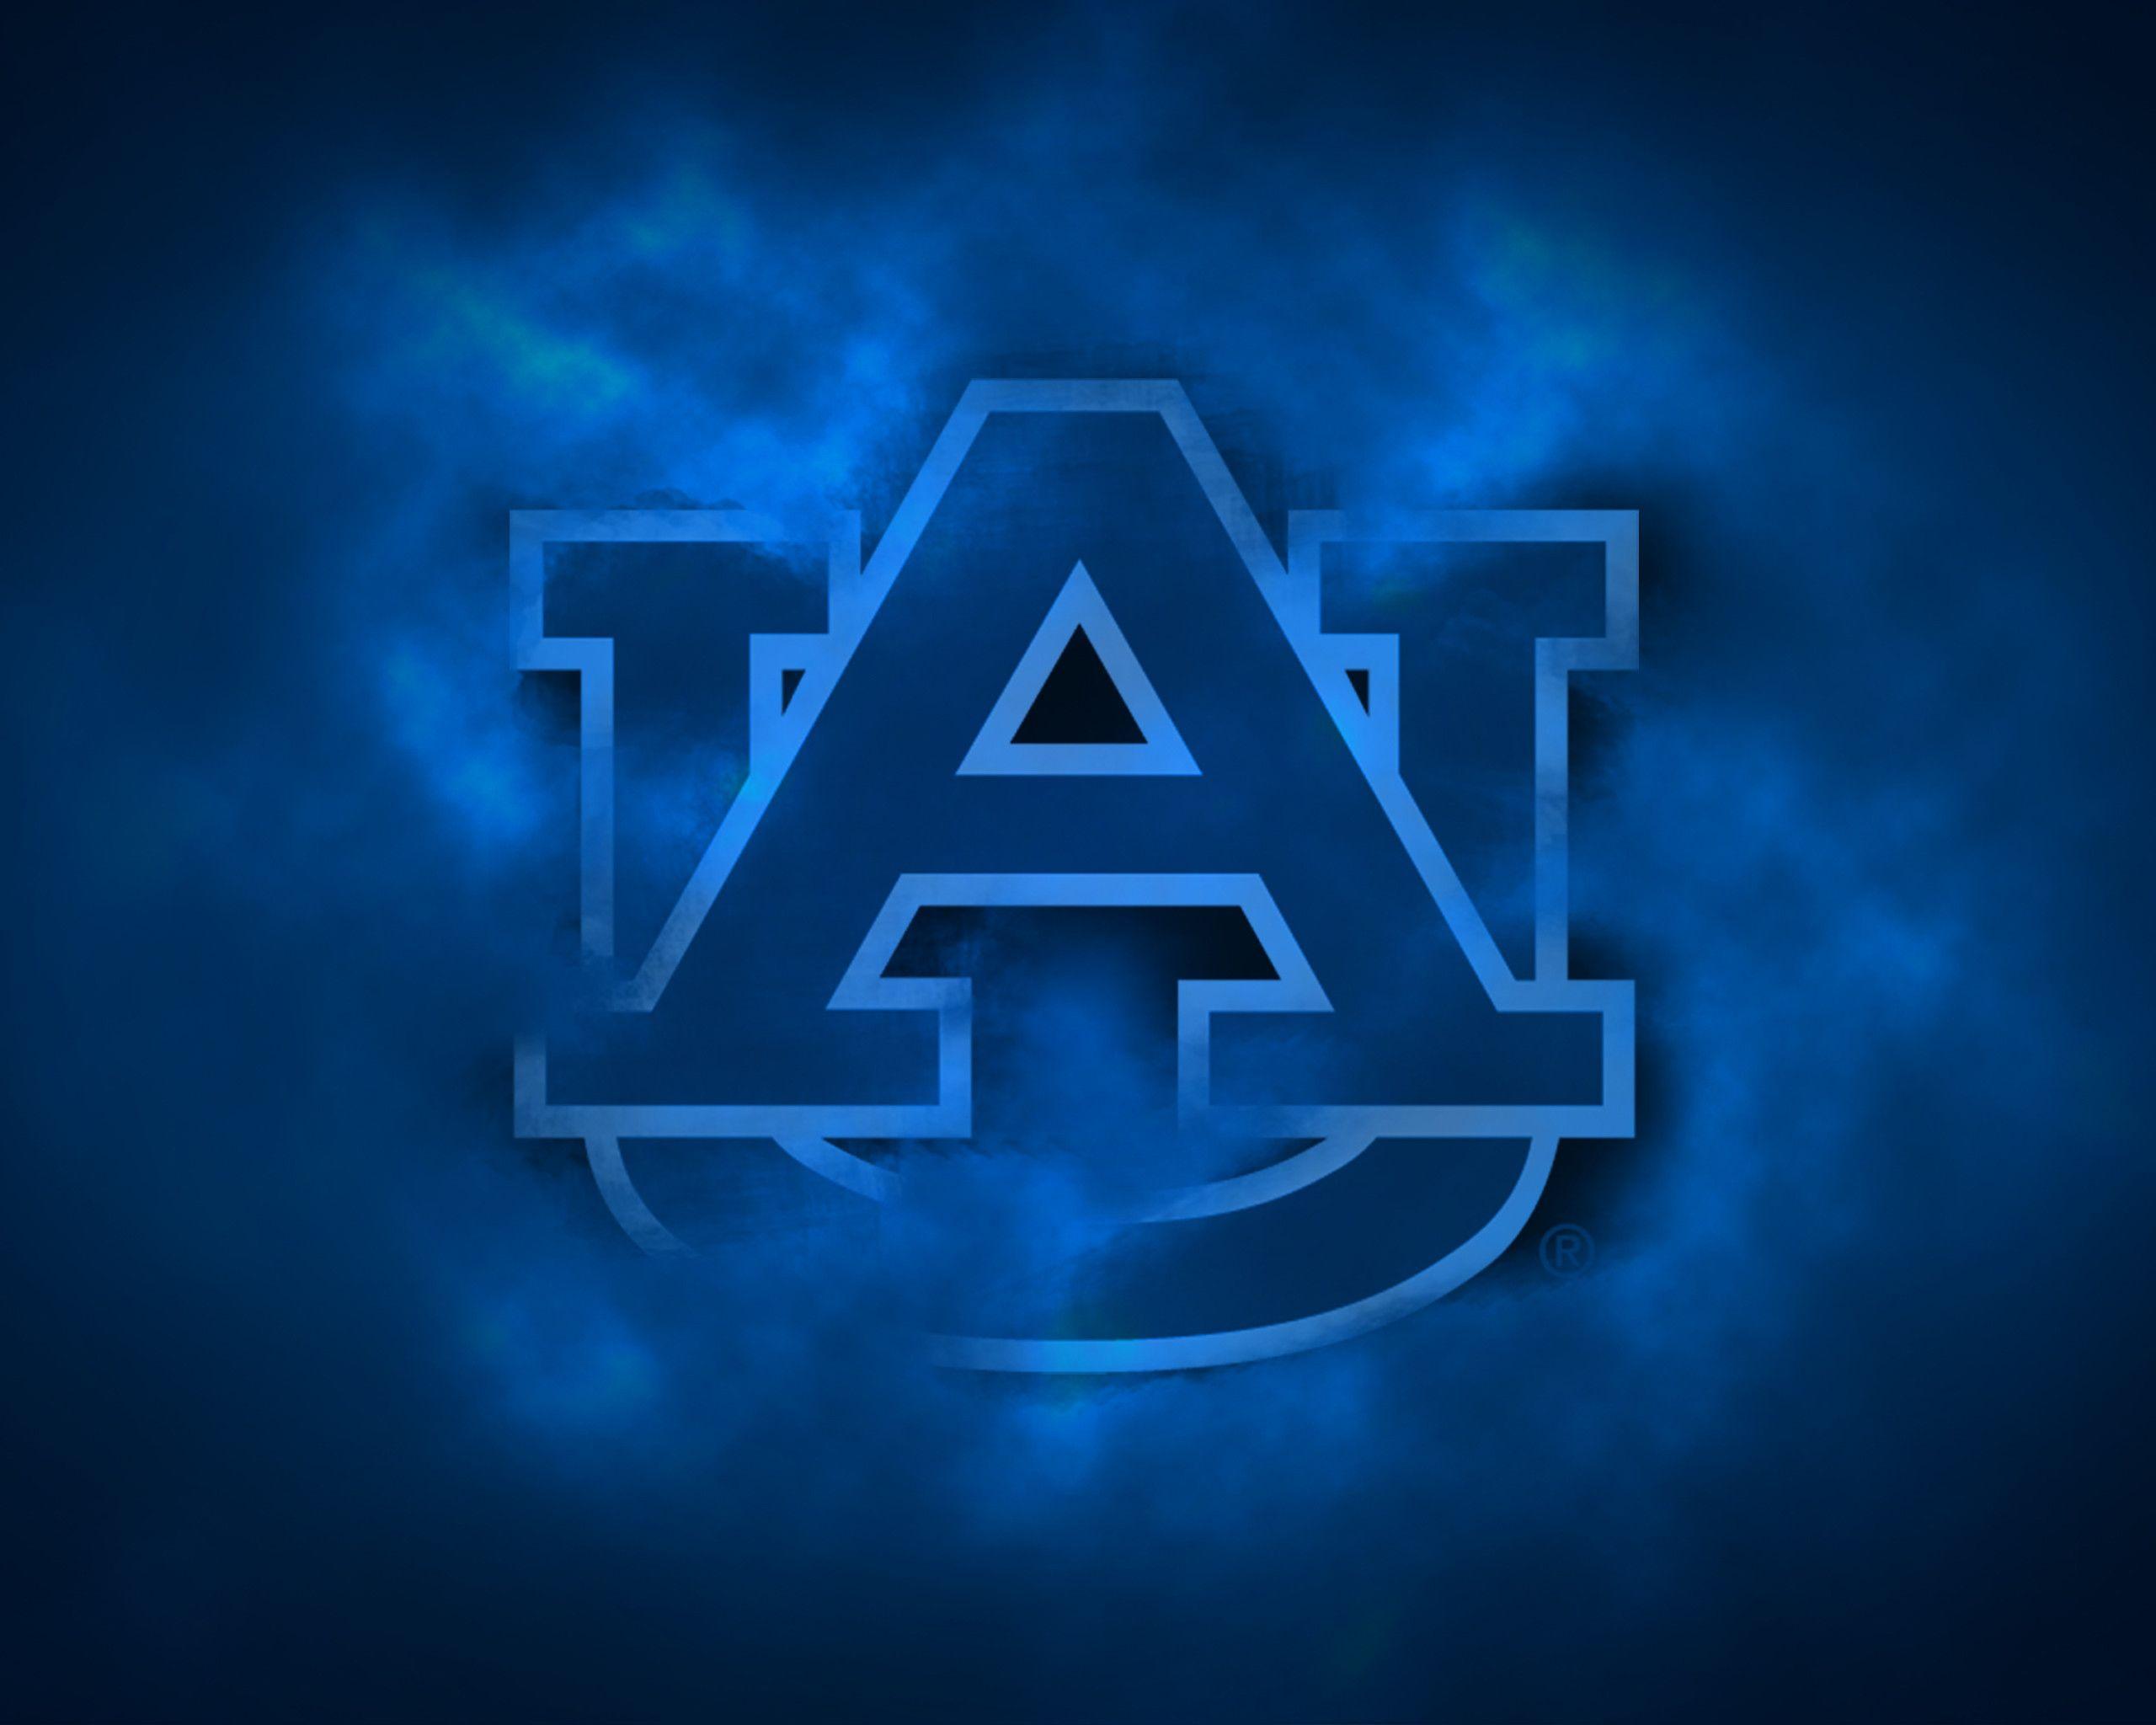 Auburn Tigers american football team NCAA orange blue stone USA asphalt  texture HD wallpaper  Peakpx